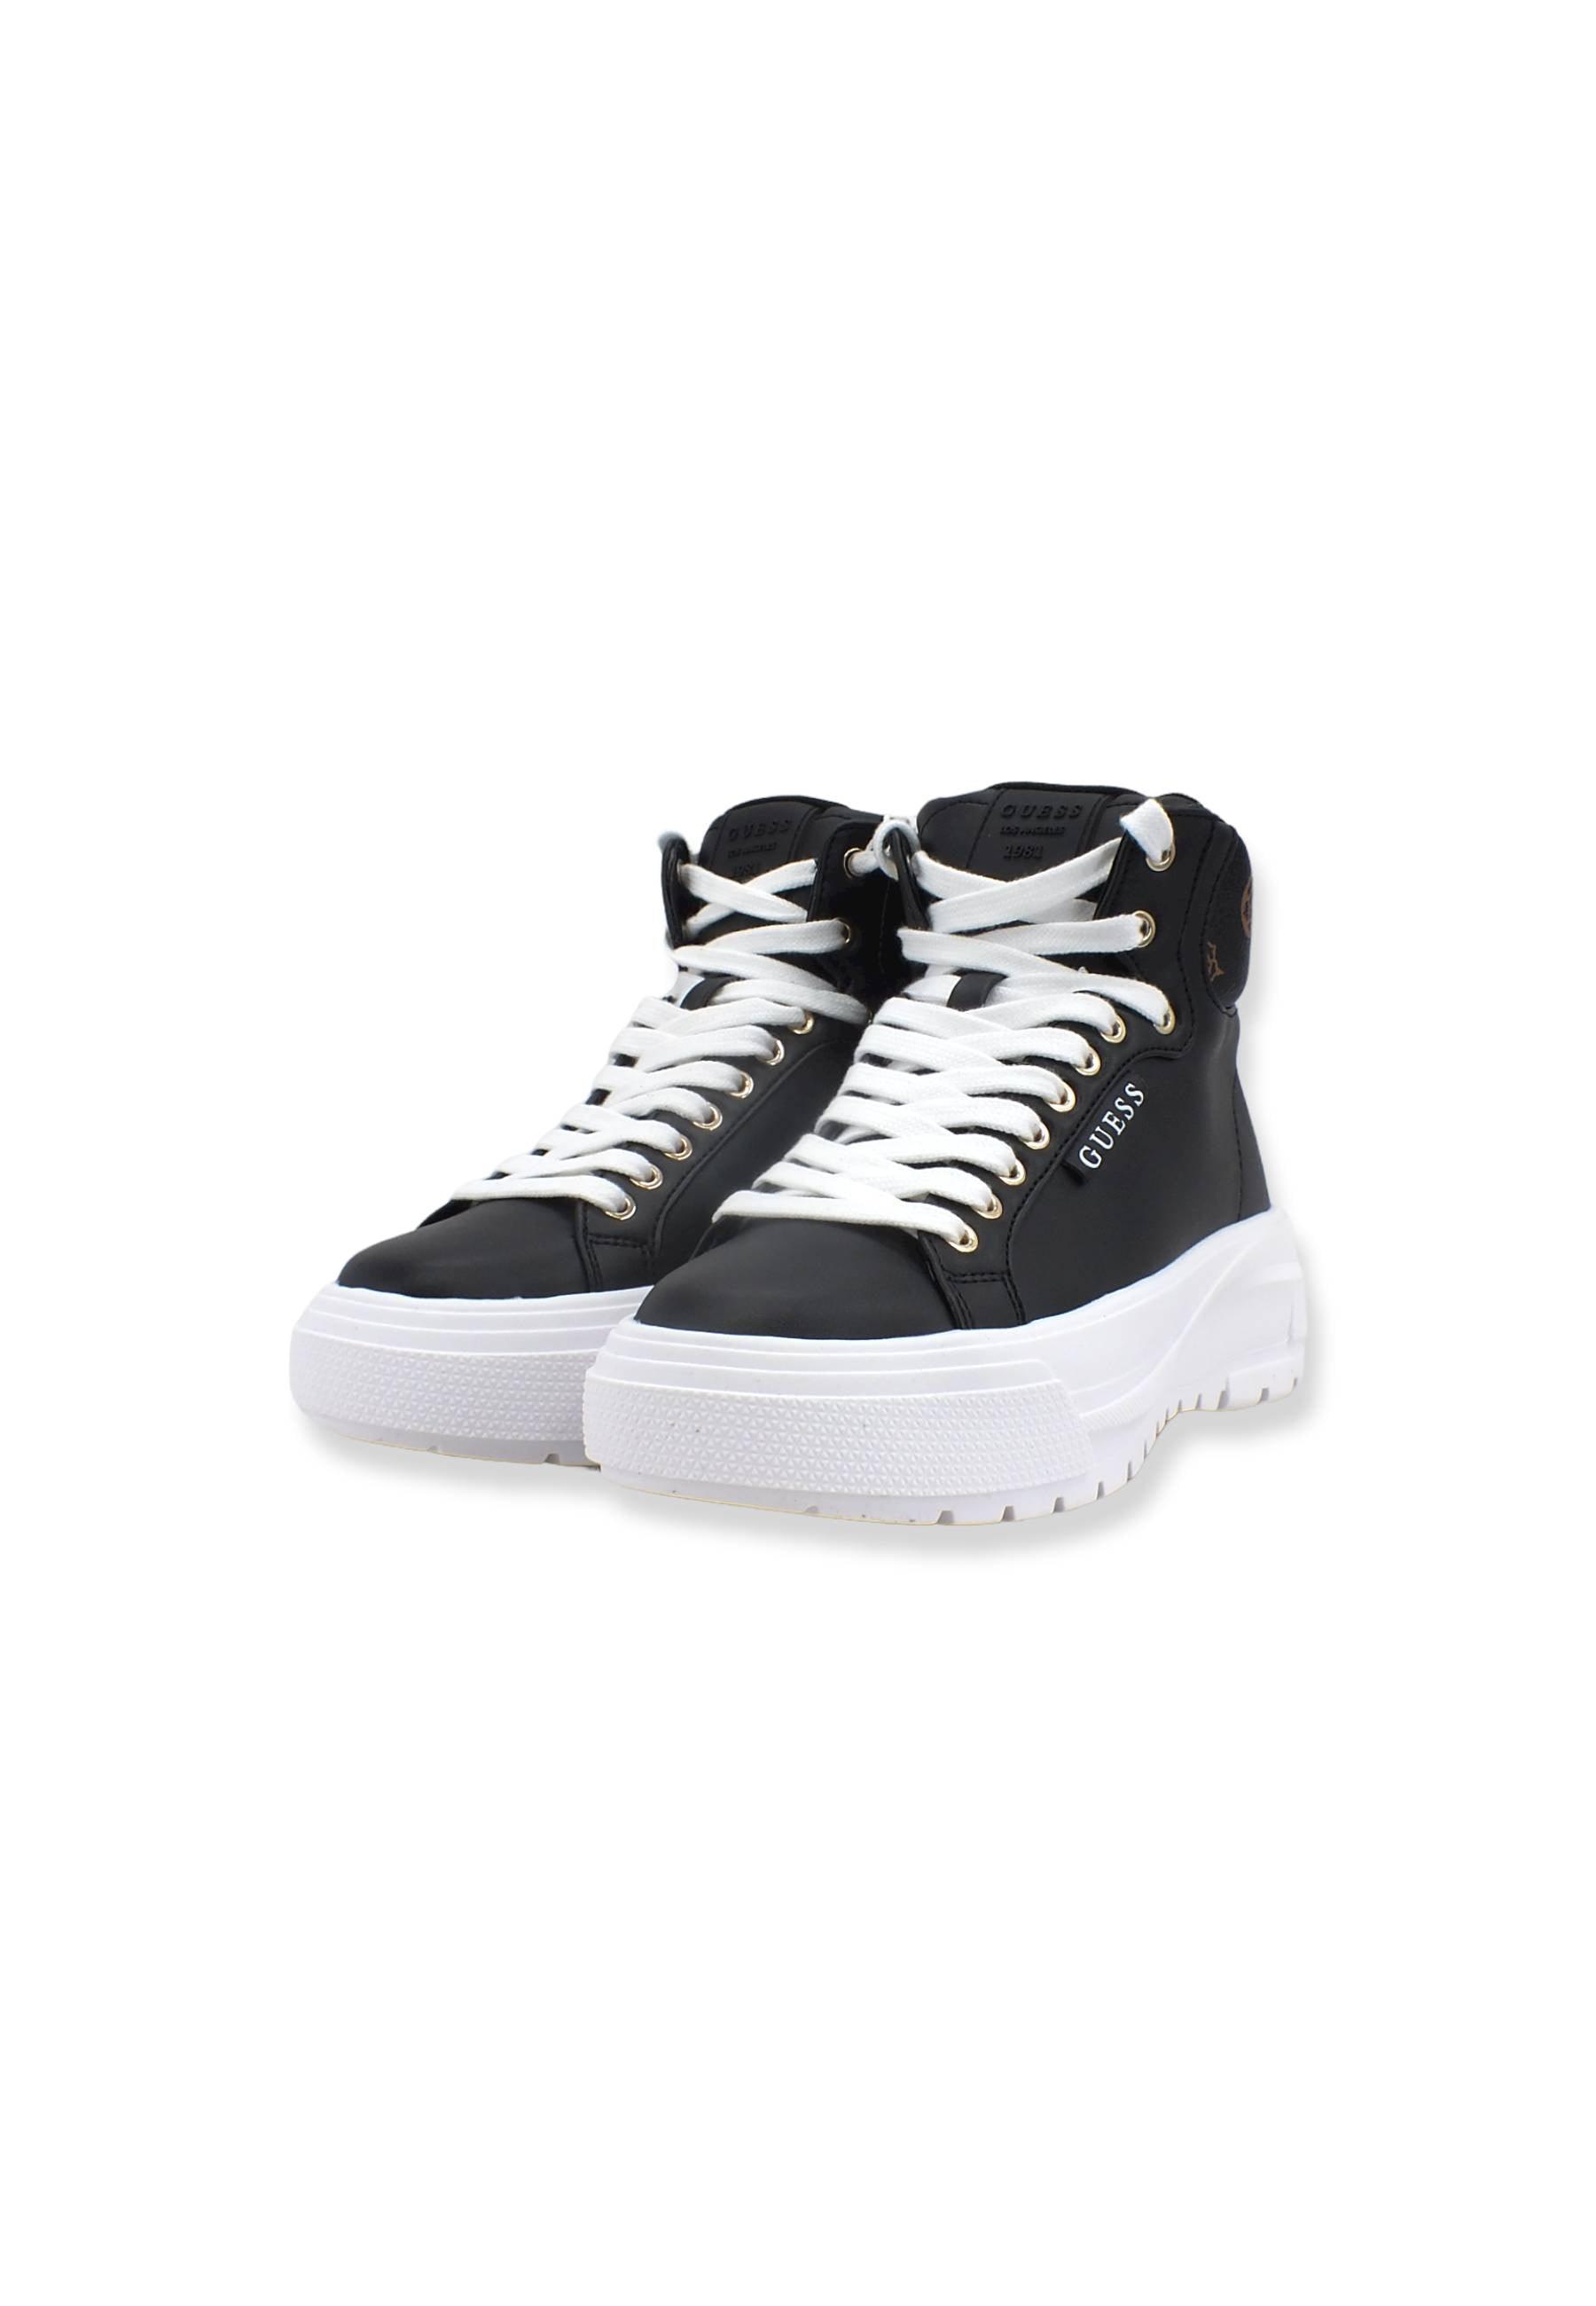 GUESS Sneaker Mid Platform Donna Black Brown FL8EA2SMA12 - Sandrini Calzature e Abbigliamento